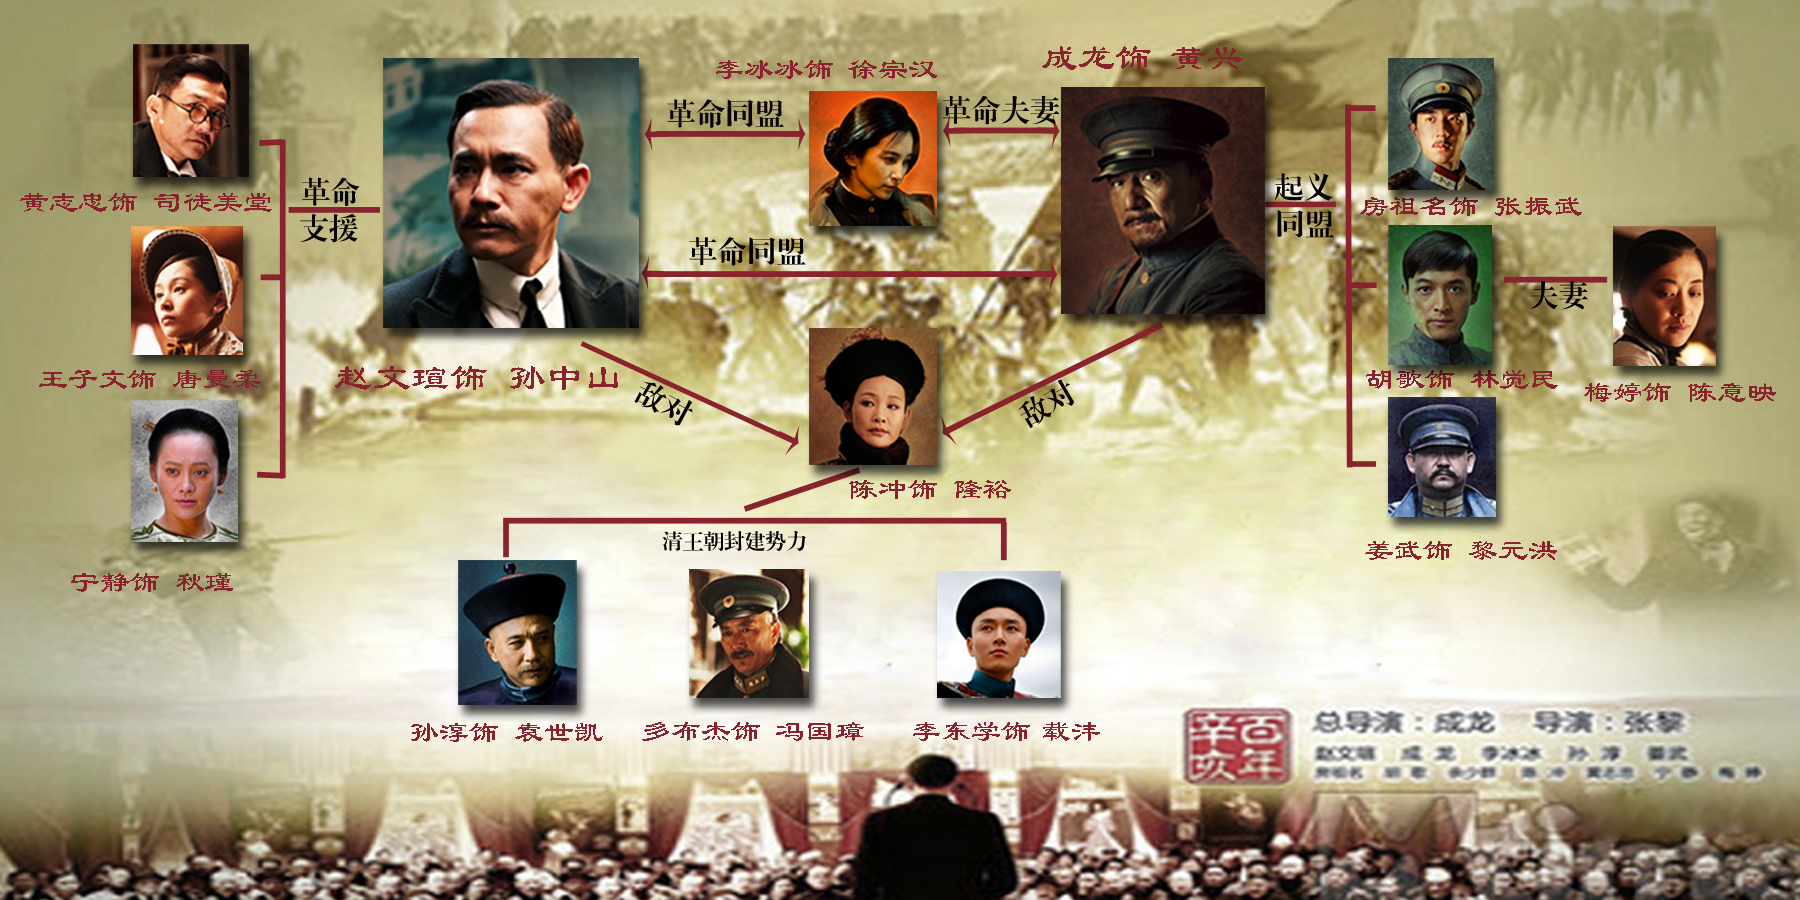 近日,片方发布了一款人物关系图,以与清朝势力的格局